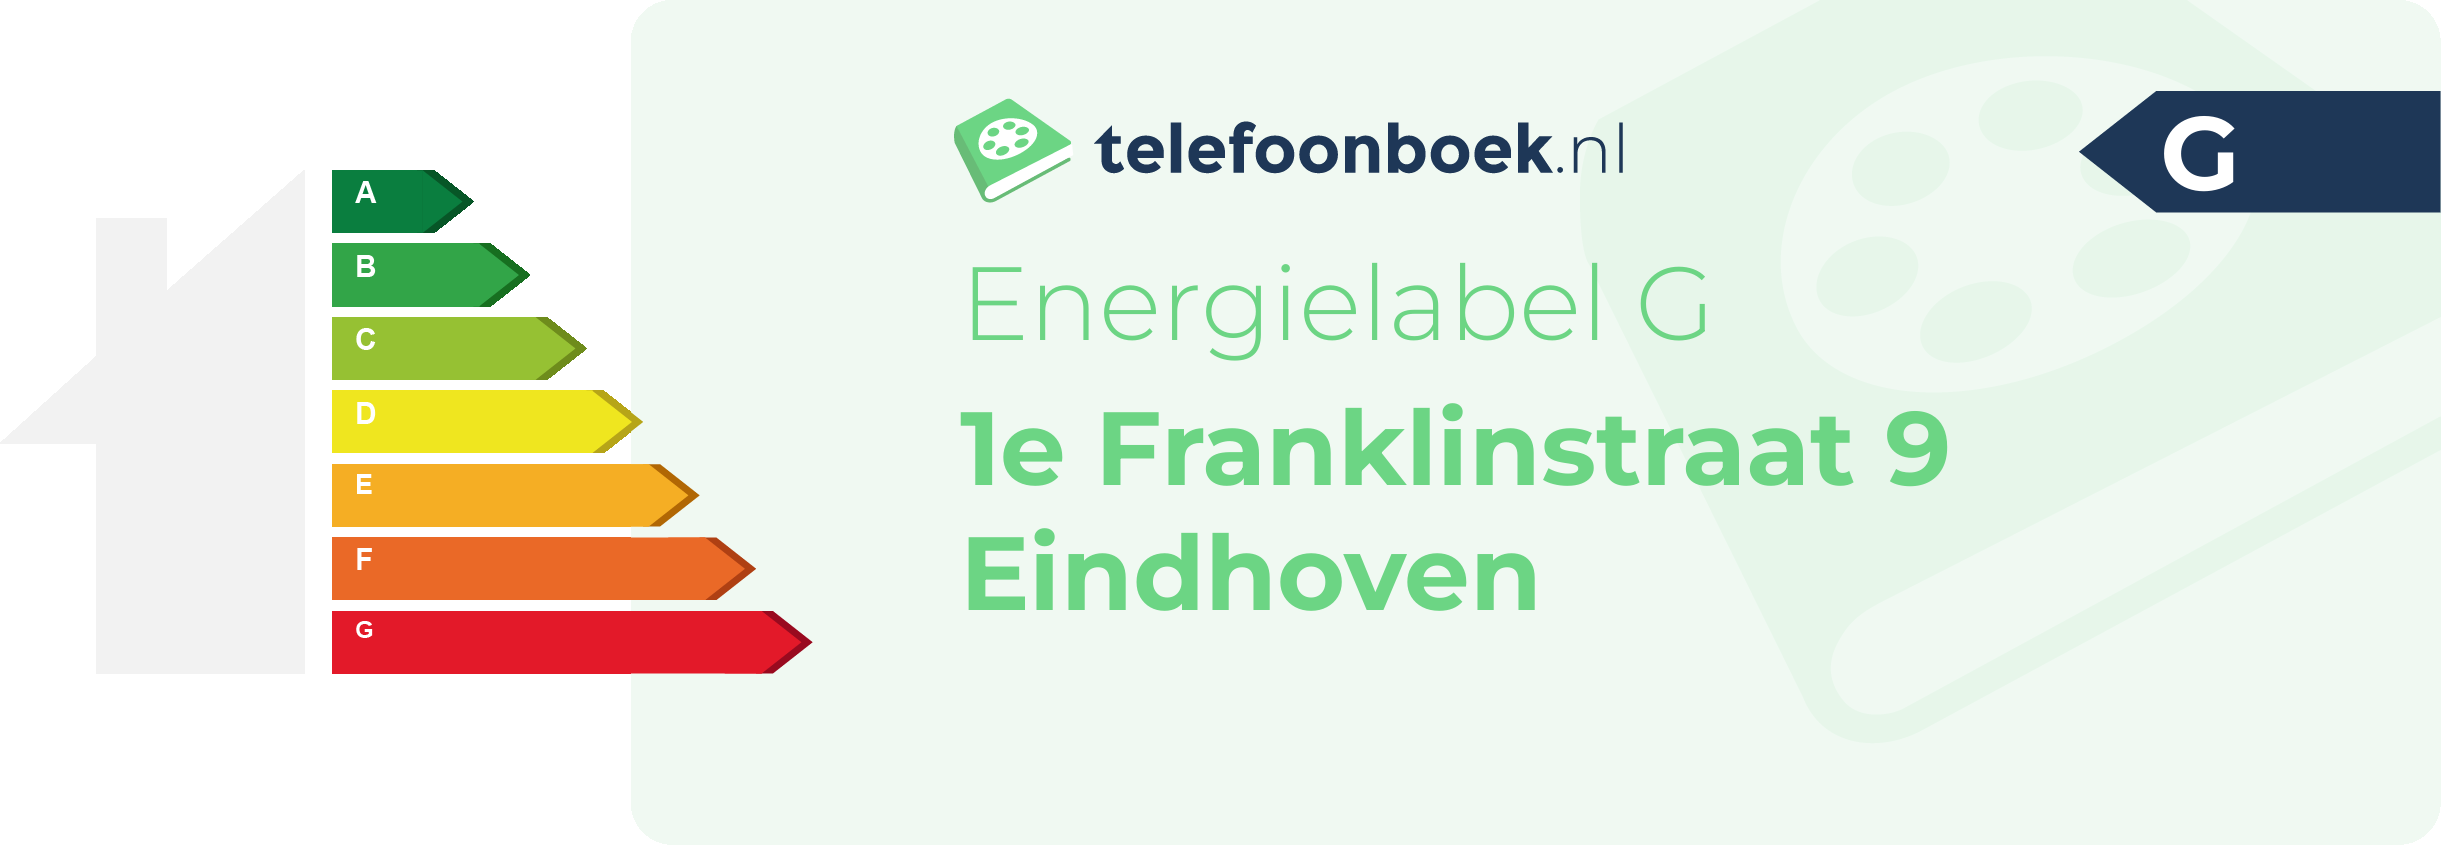 Energielabel 1e Franklinstraat 9 Eindhoven